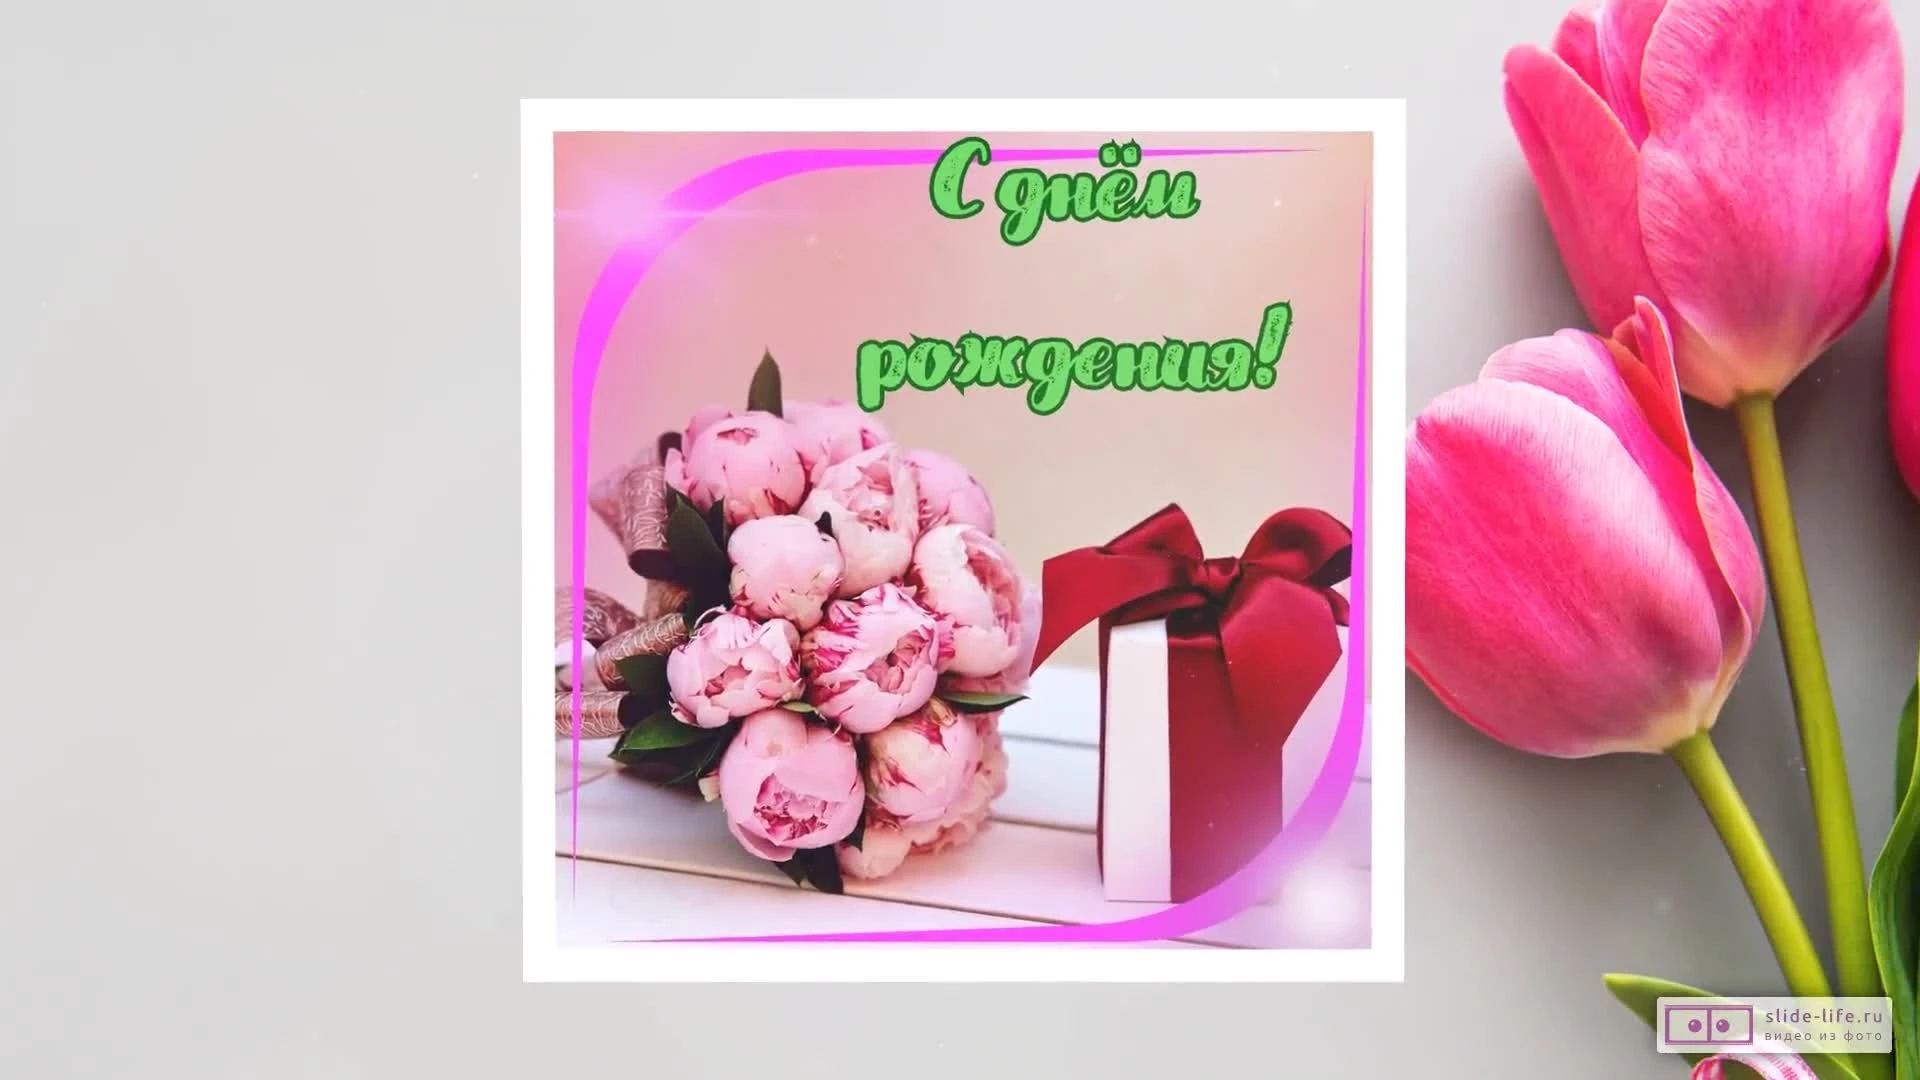 Видео поздравление с днем рождения женщине 45 лет — Slide-Life.ru